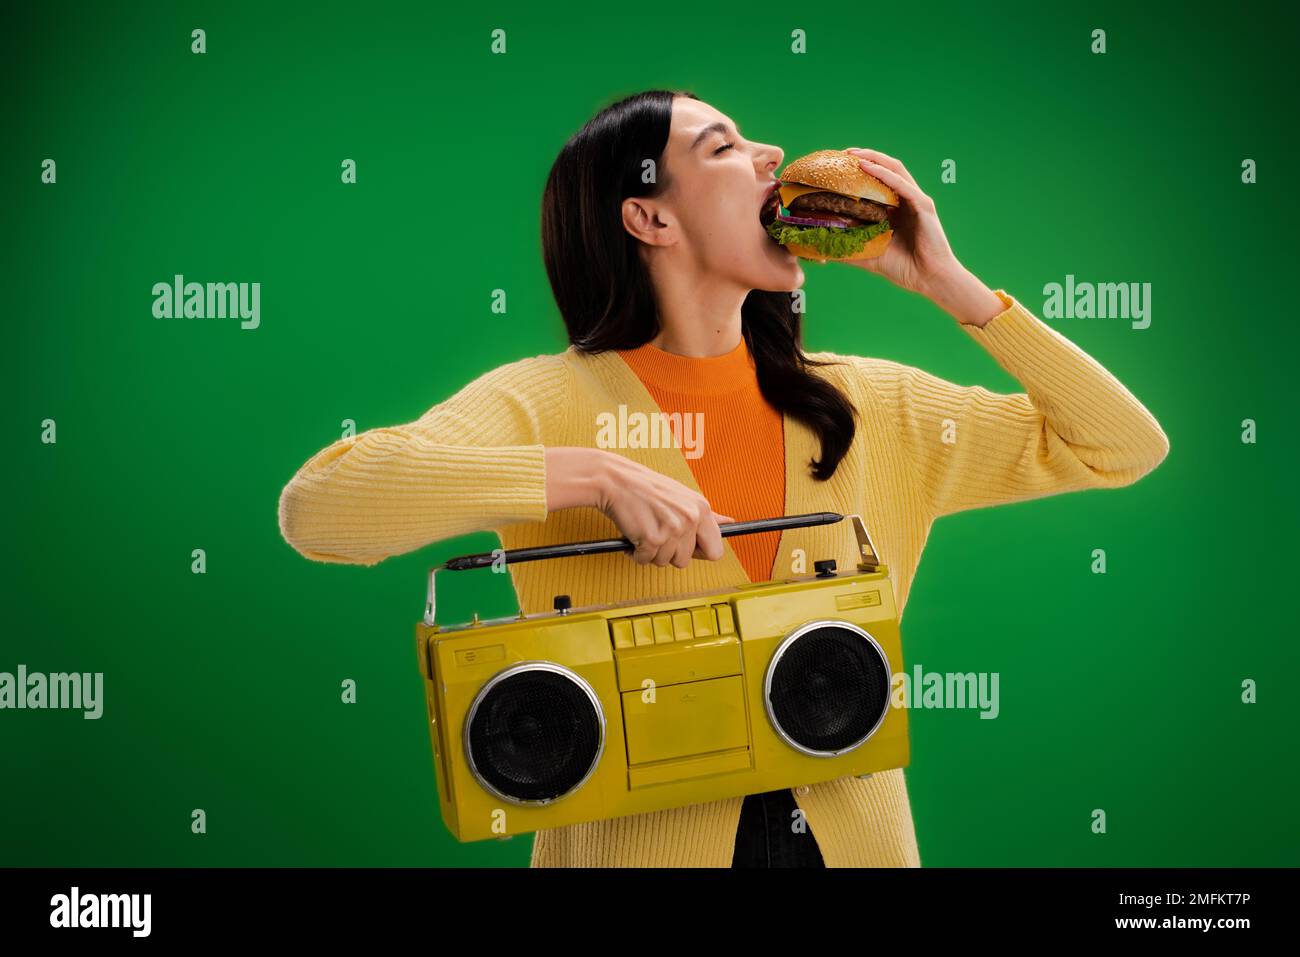 giovane e donna affamata con boombox mangiare gustoso hamburger isolato sul verde, immagine stock Foto Stock